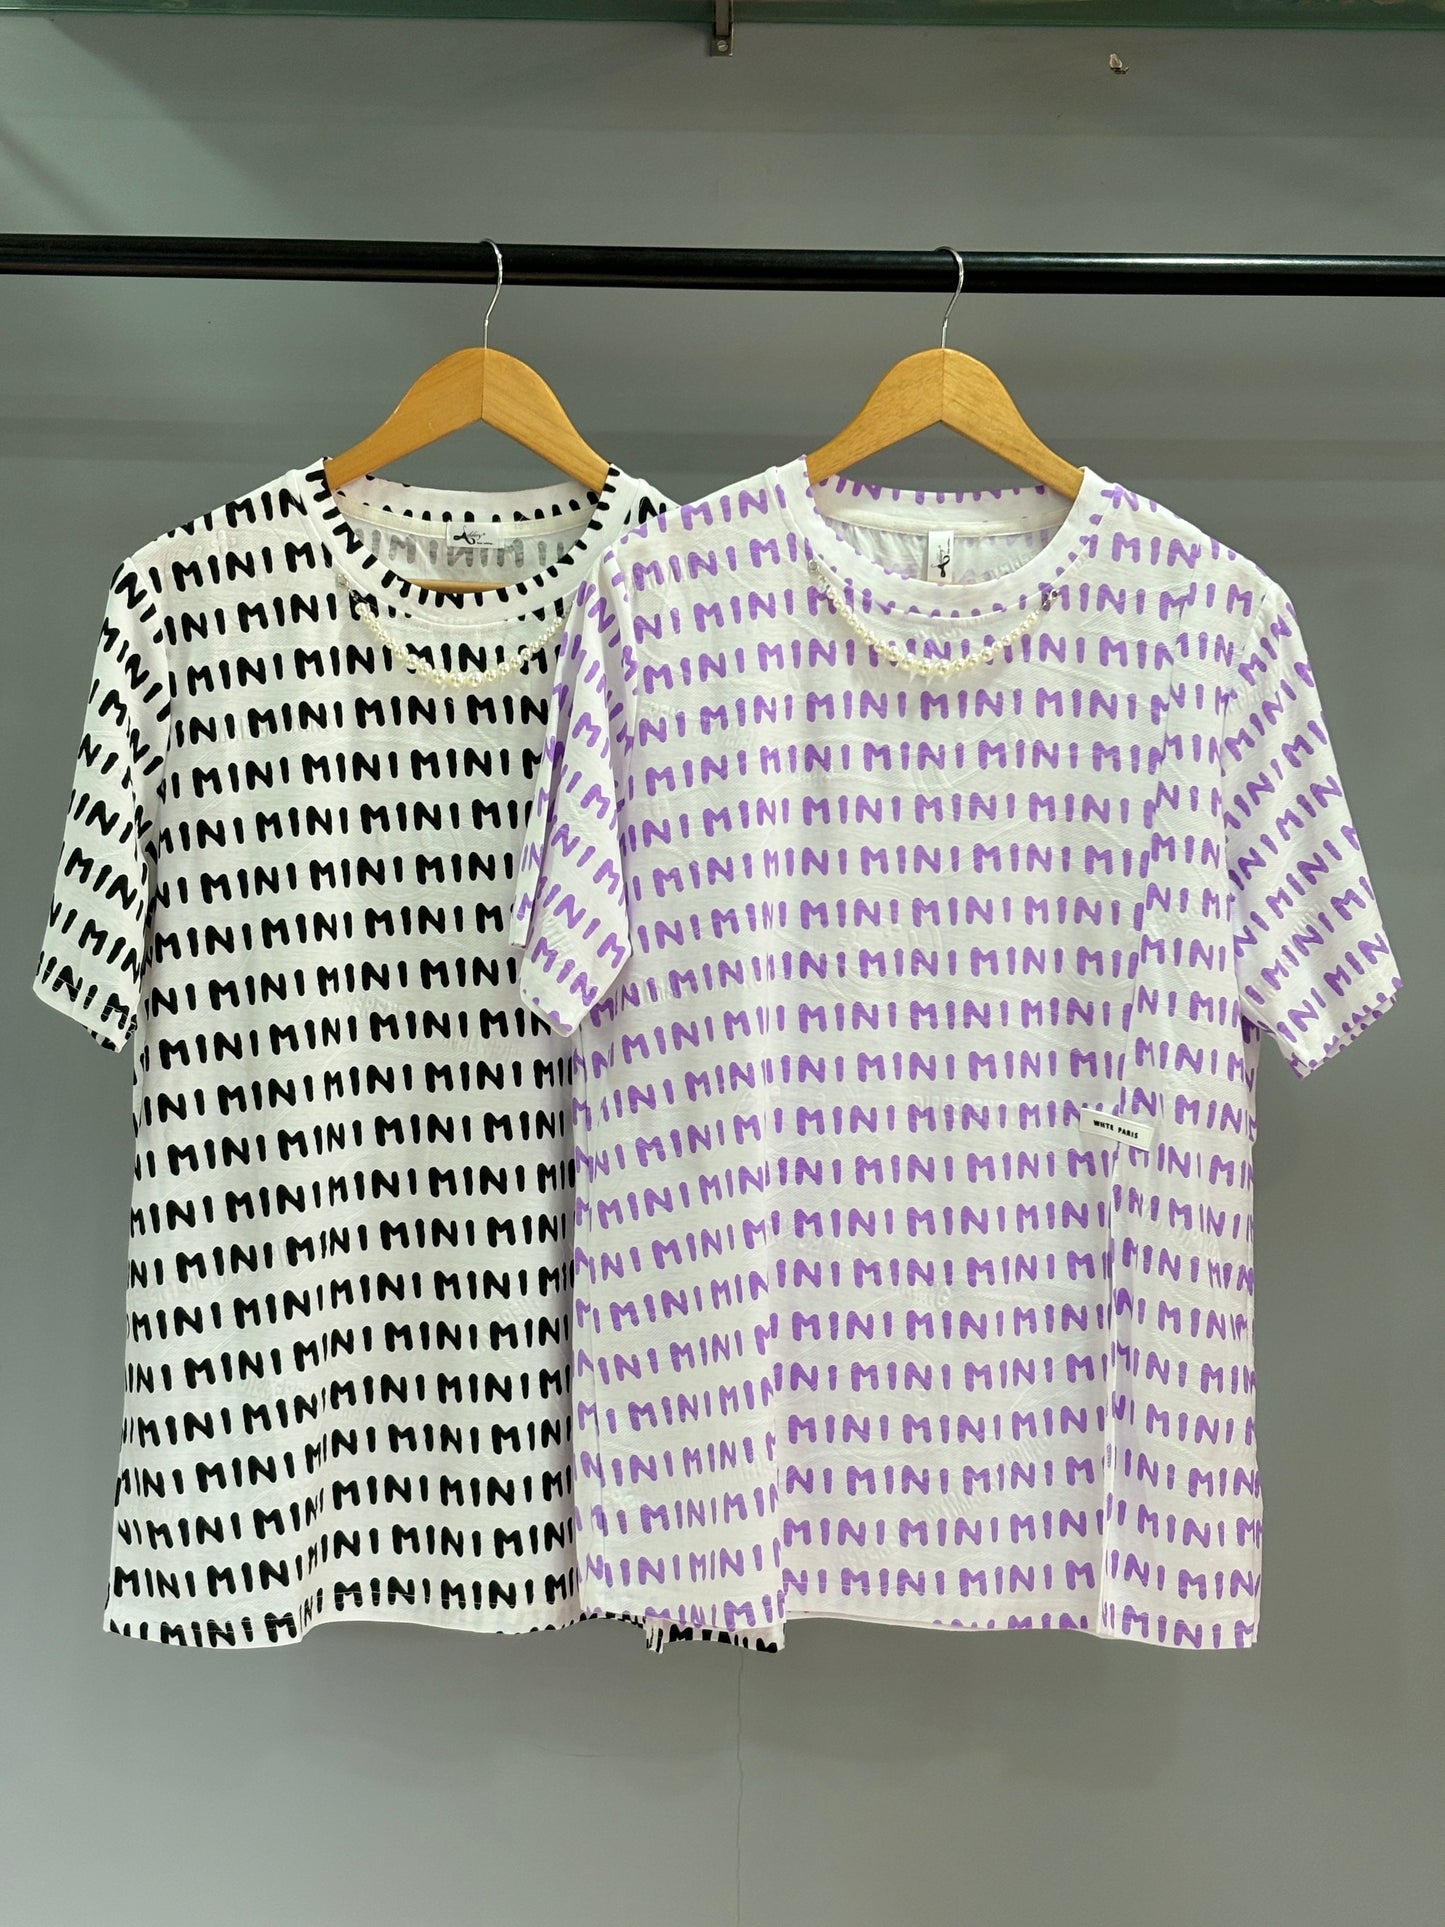 Mini T-Shirt